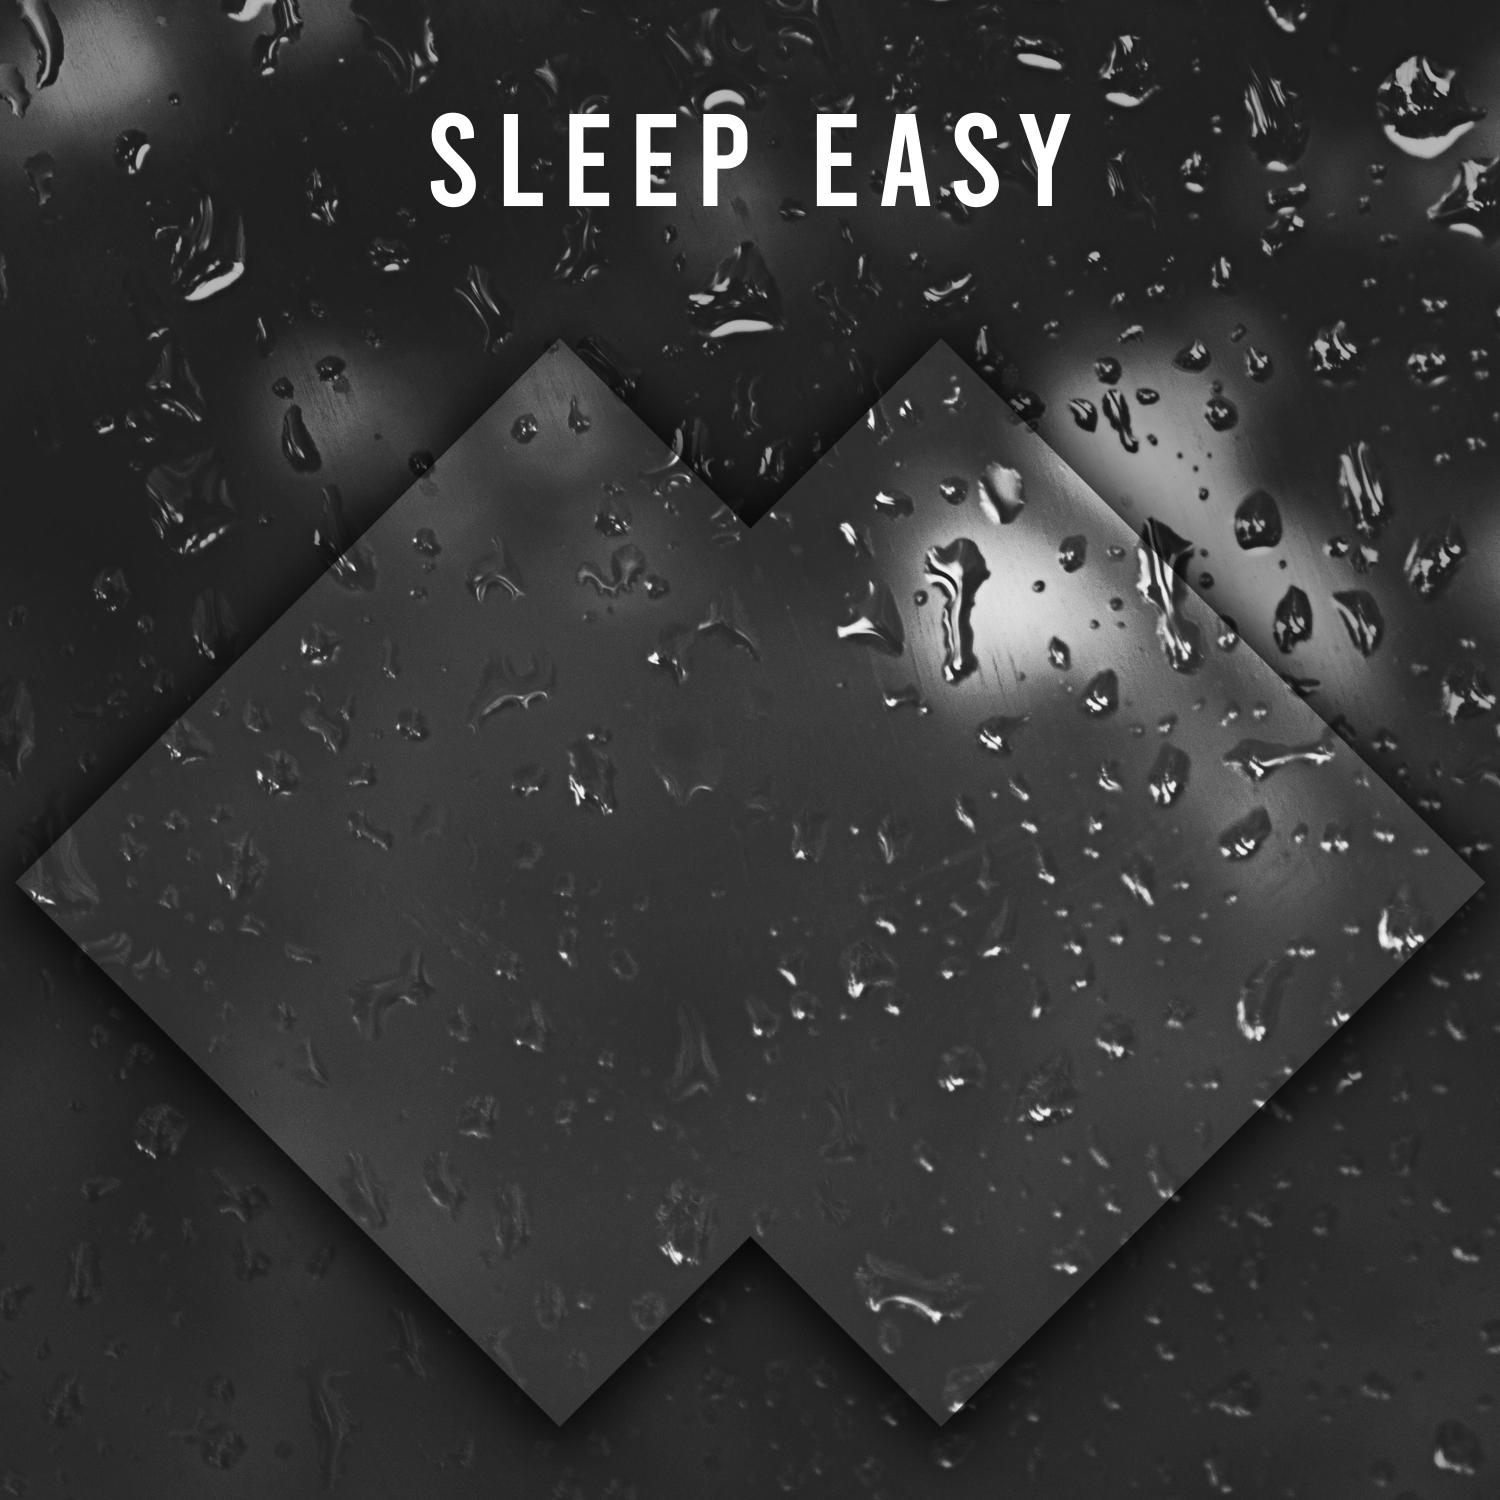 12 Zen Rain Sounds to Sleep Easy